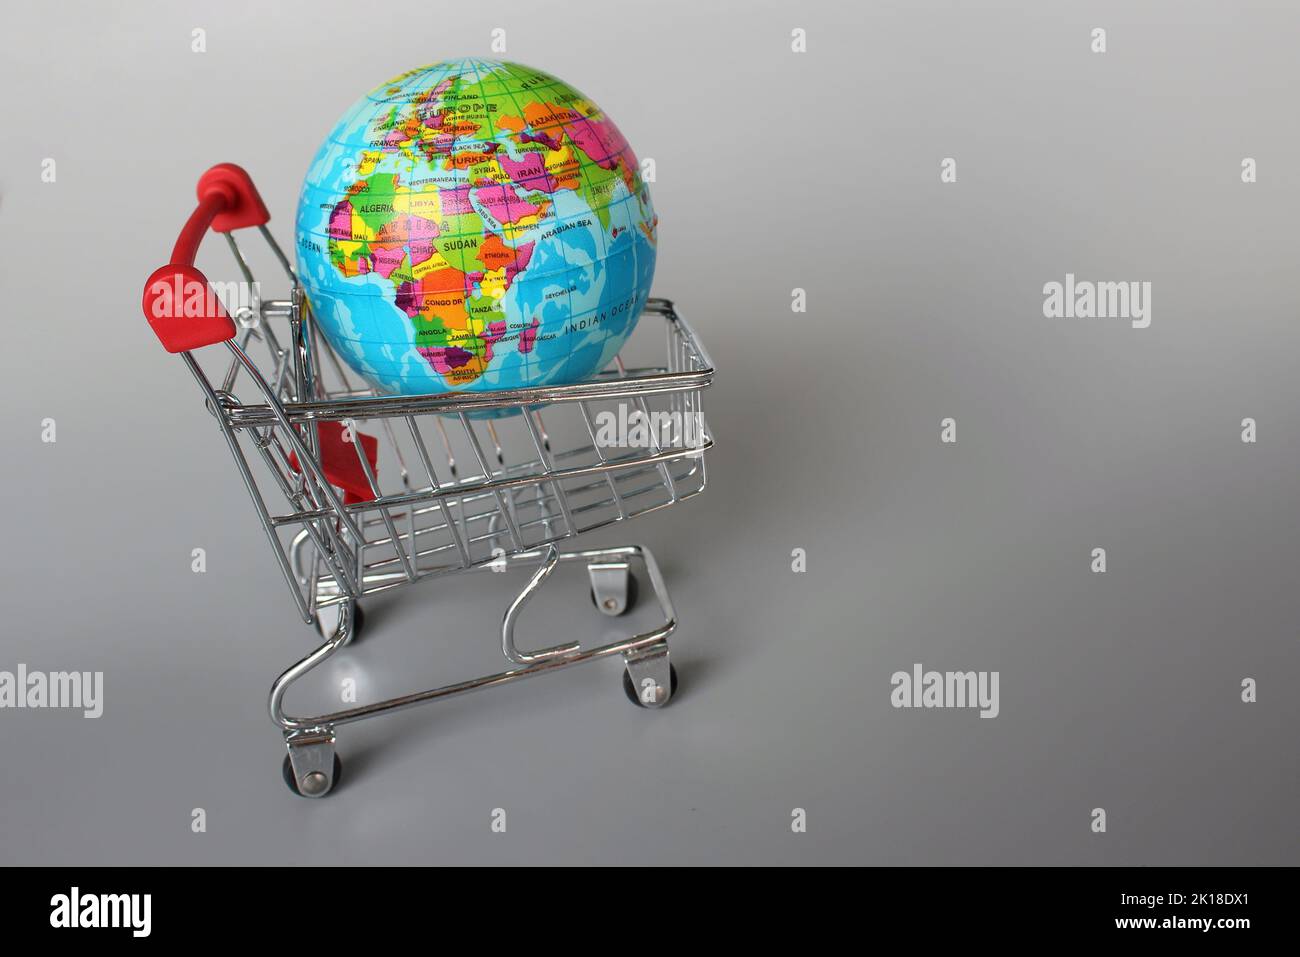 Mercato globale, concetto di mercato internazionale. Mini carrello e globo su sfondo grigio Foto Stock